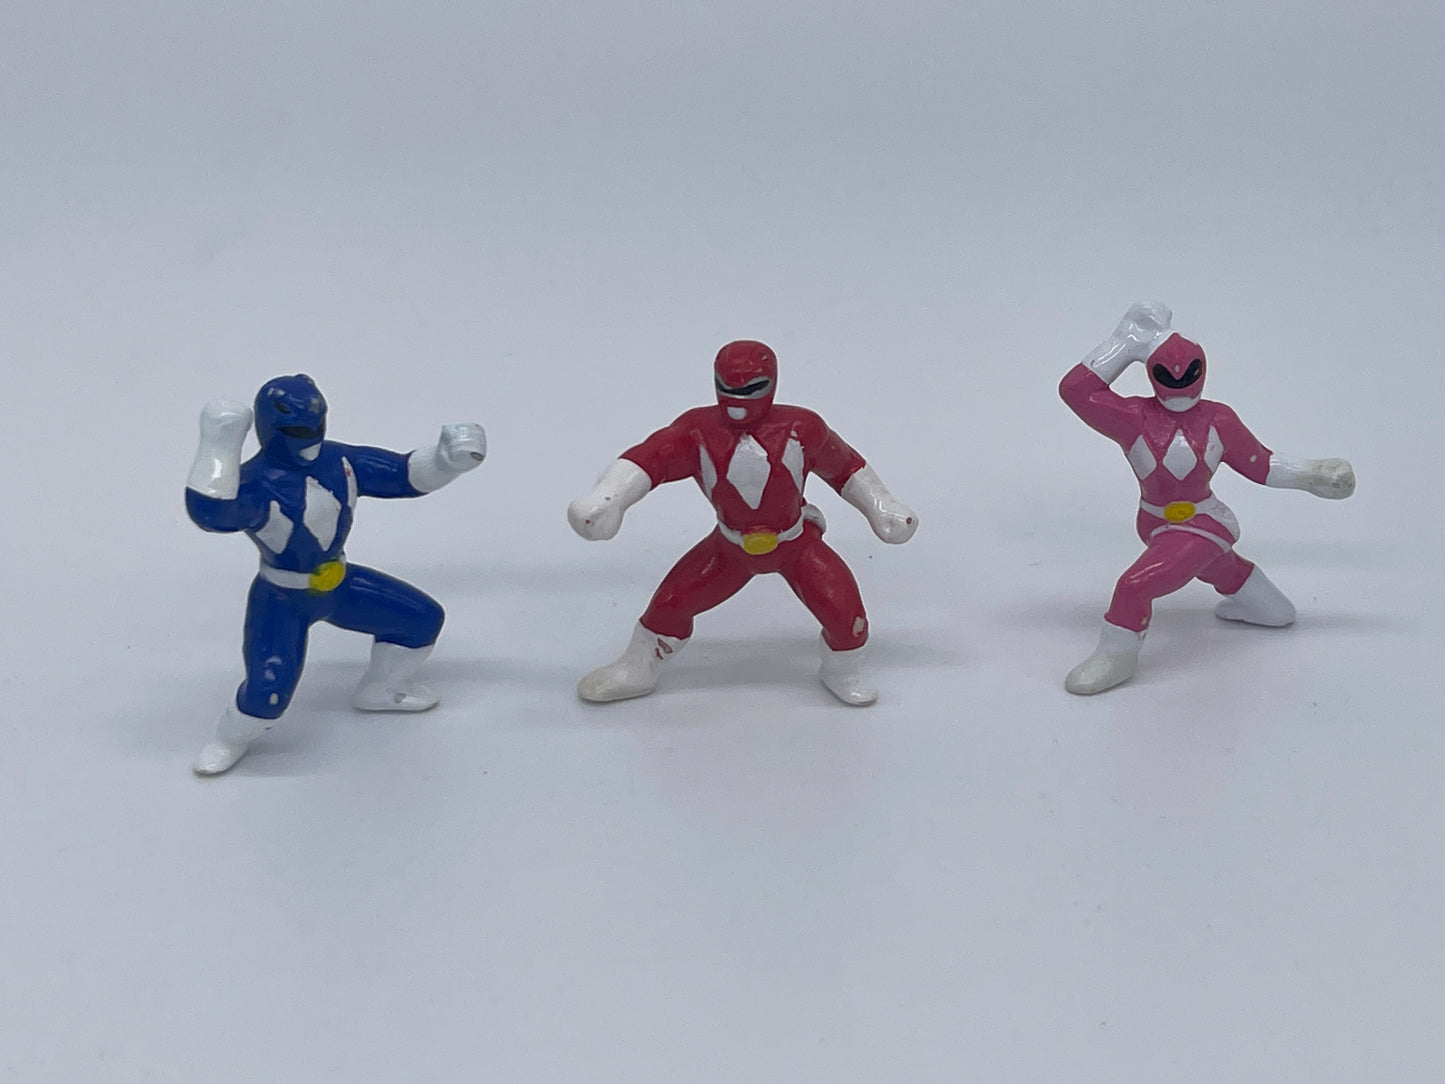 Power Rangers "Blue, Red & Pink Ranger" Mikrofiguren Saban (1994)